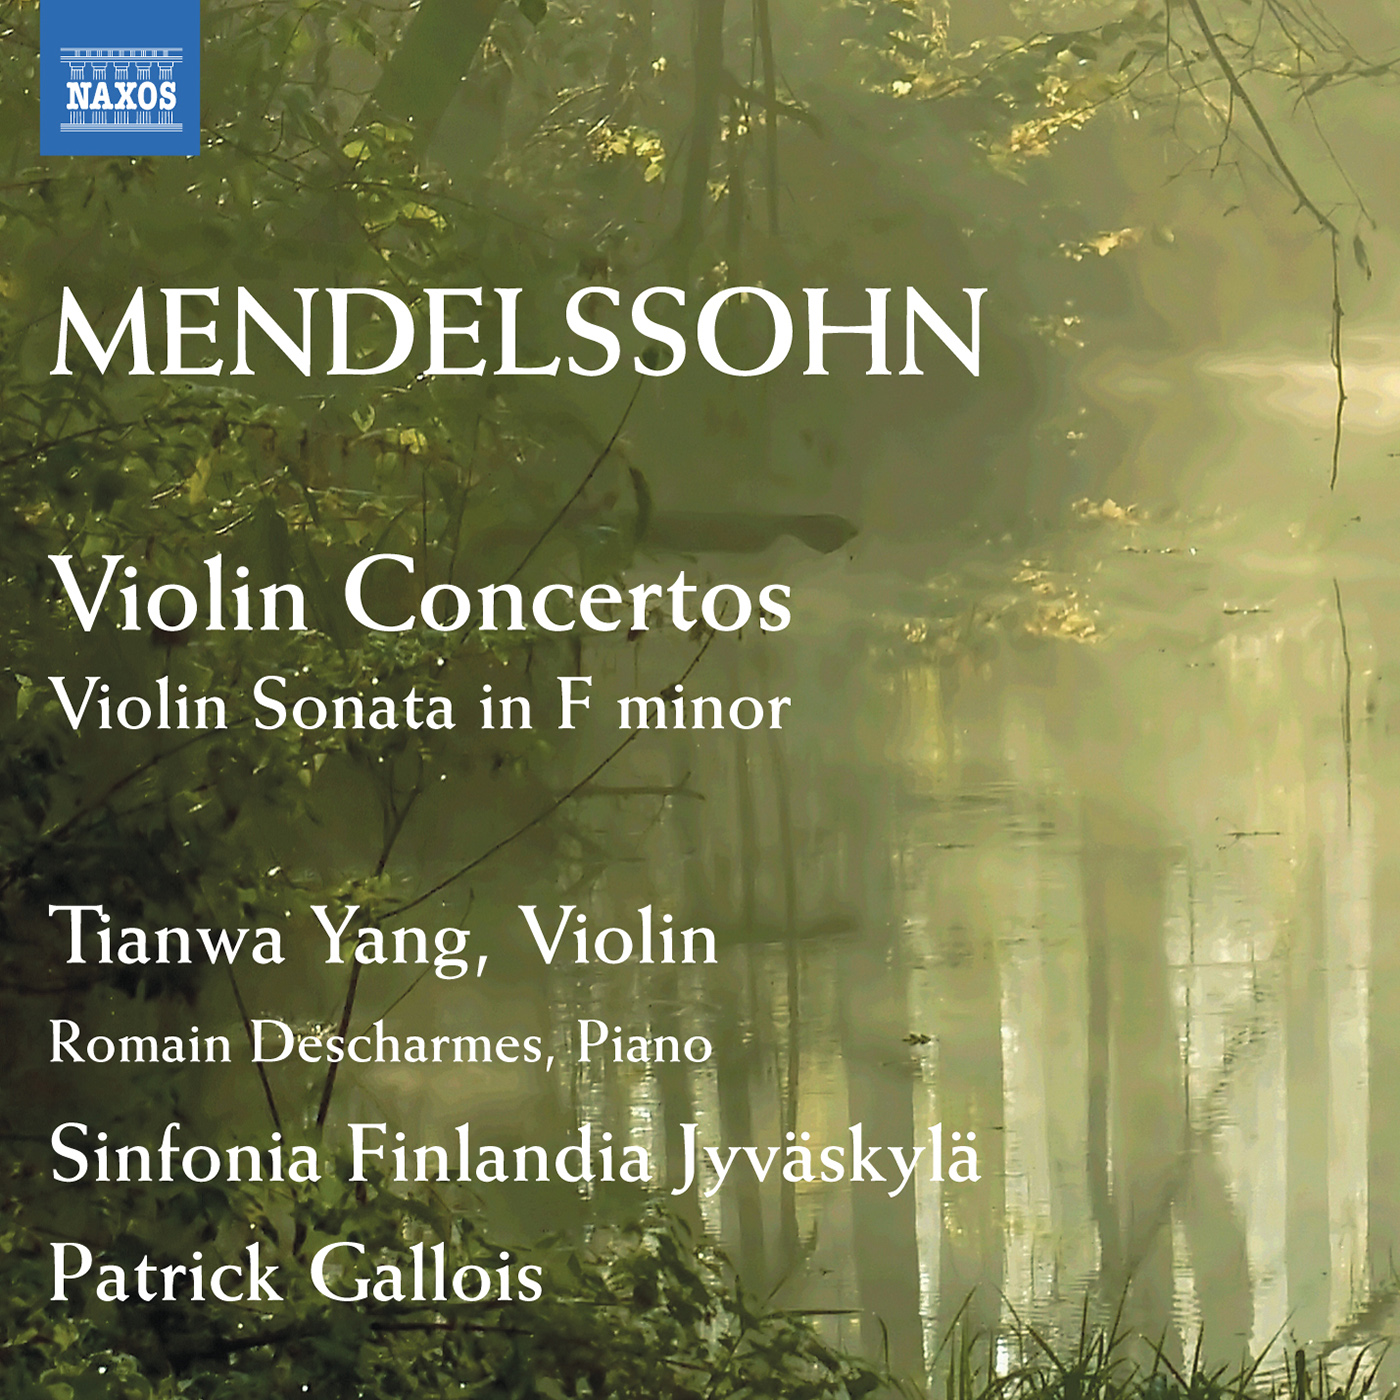 MENDELSSOHN, Felix: Violin Concertos / Violin Sonata in F Minor (Tianwa Yang, Descharmes, Sinfonia Finlandia Jyvaskyla, P. Gallois)